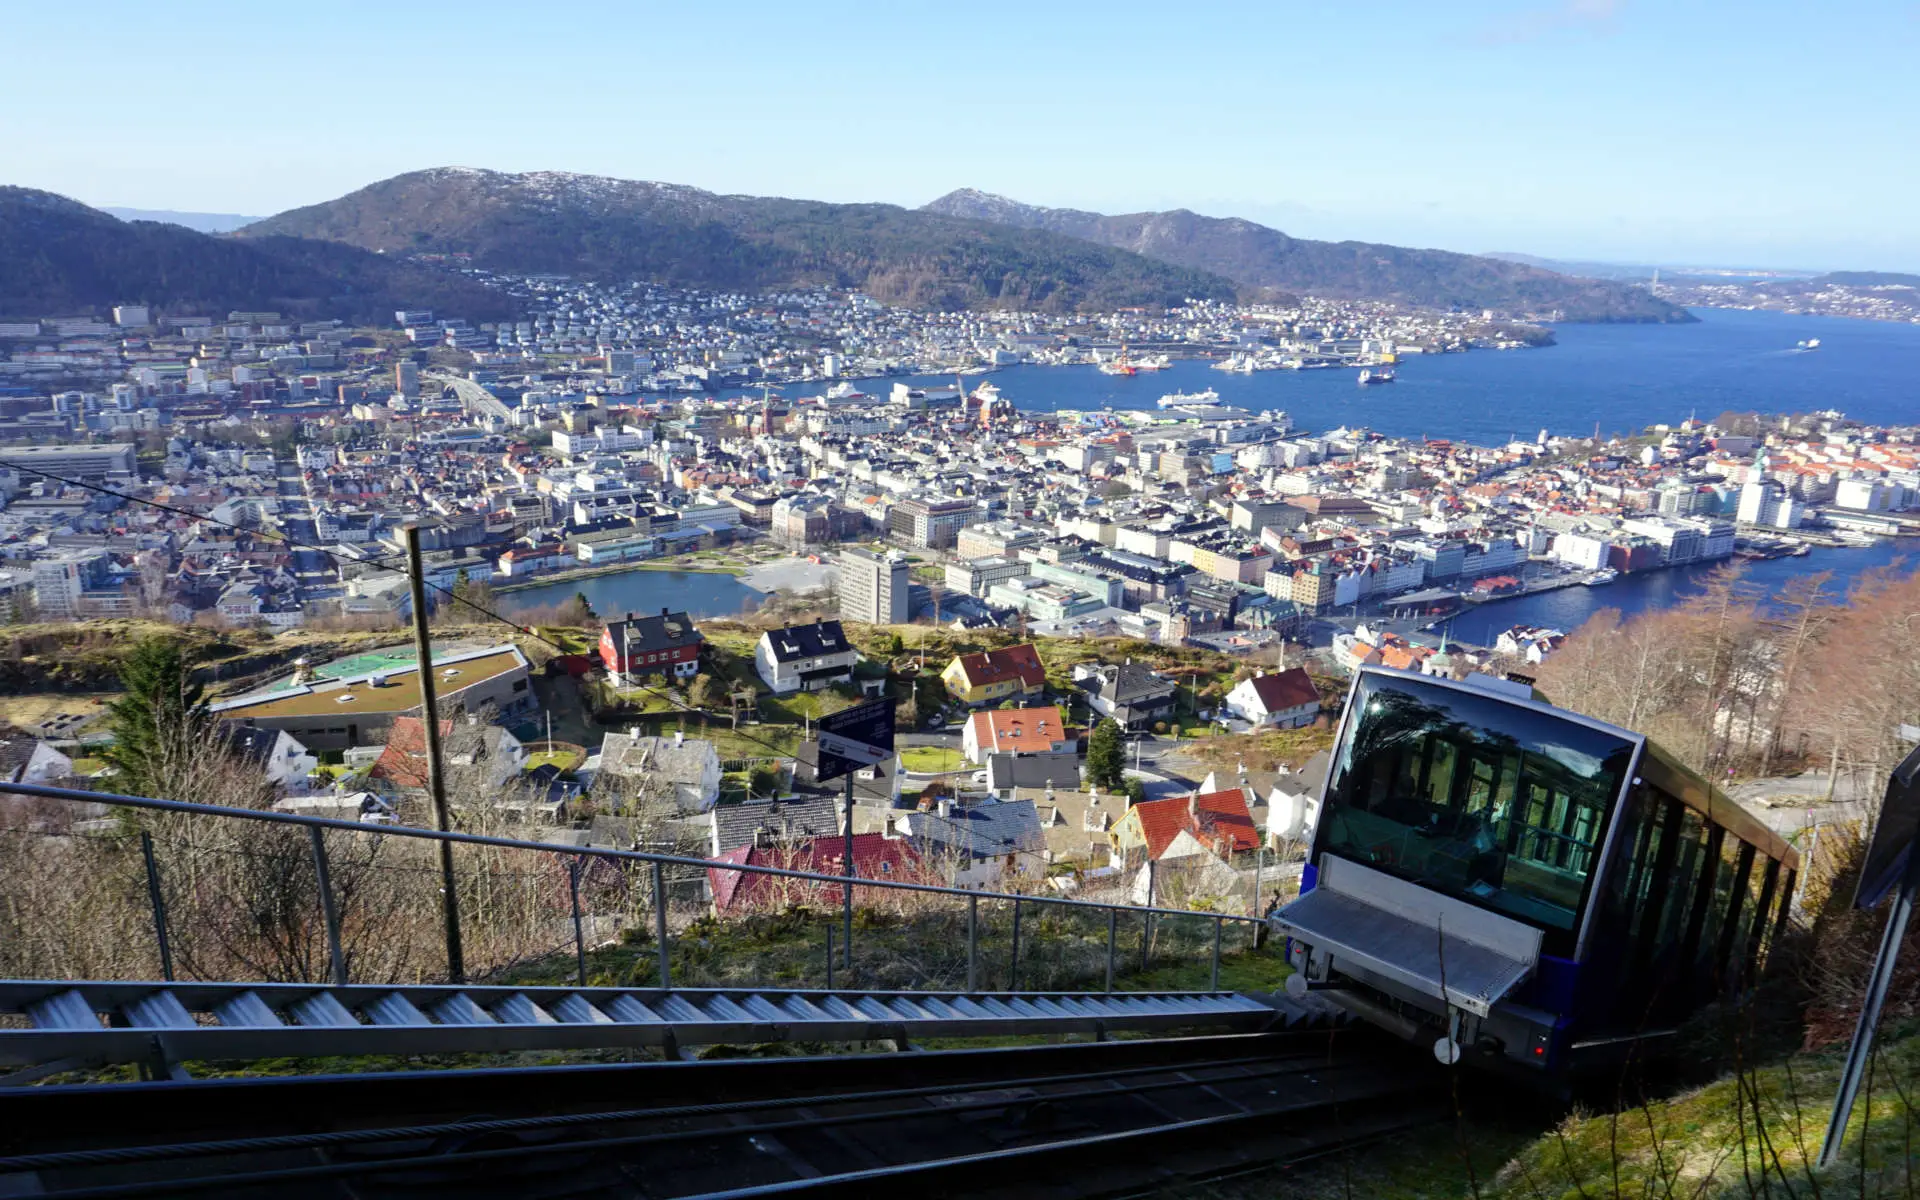 Sehenswürdigkeiten in Bergen: Fløibanen und Fløyen Aussichtspunkt